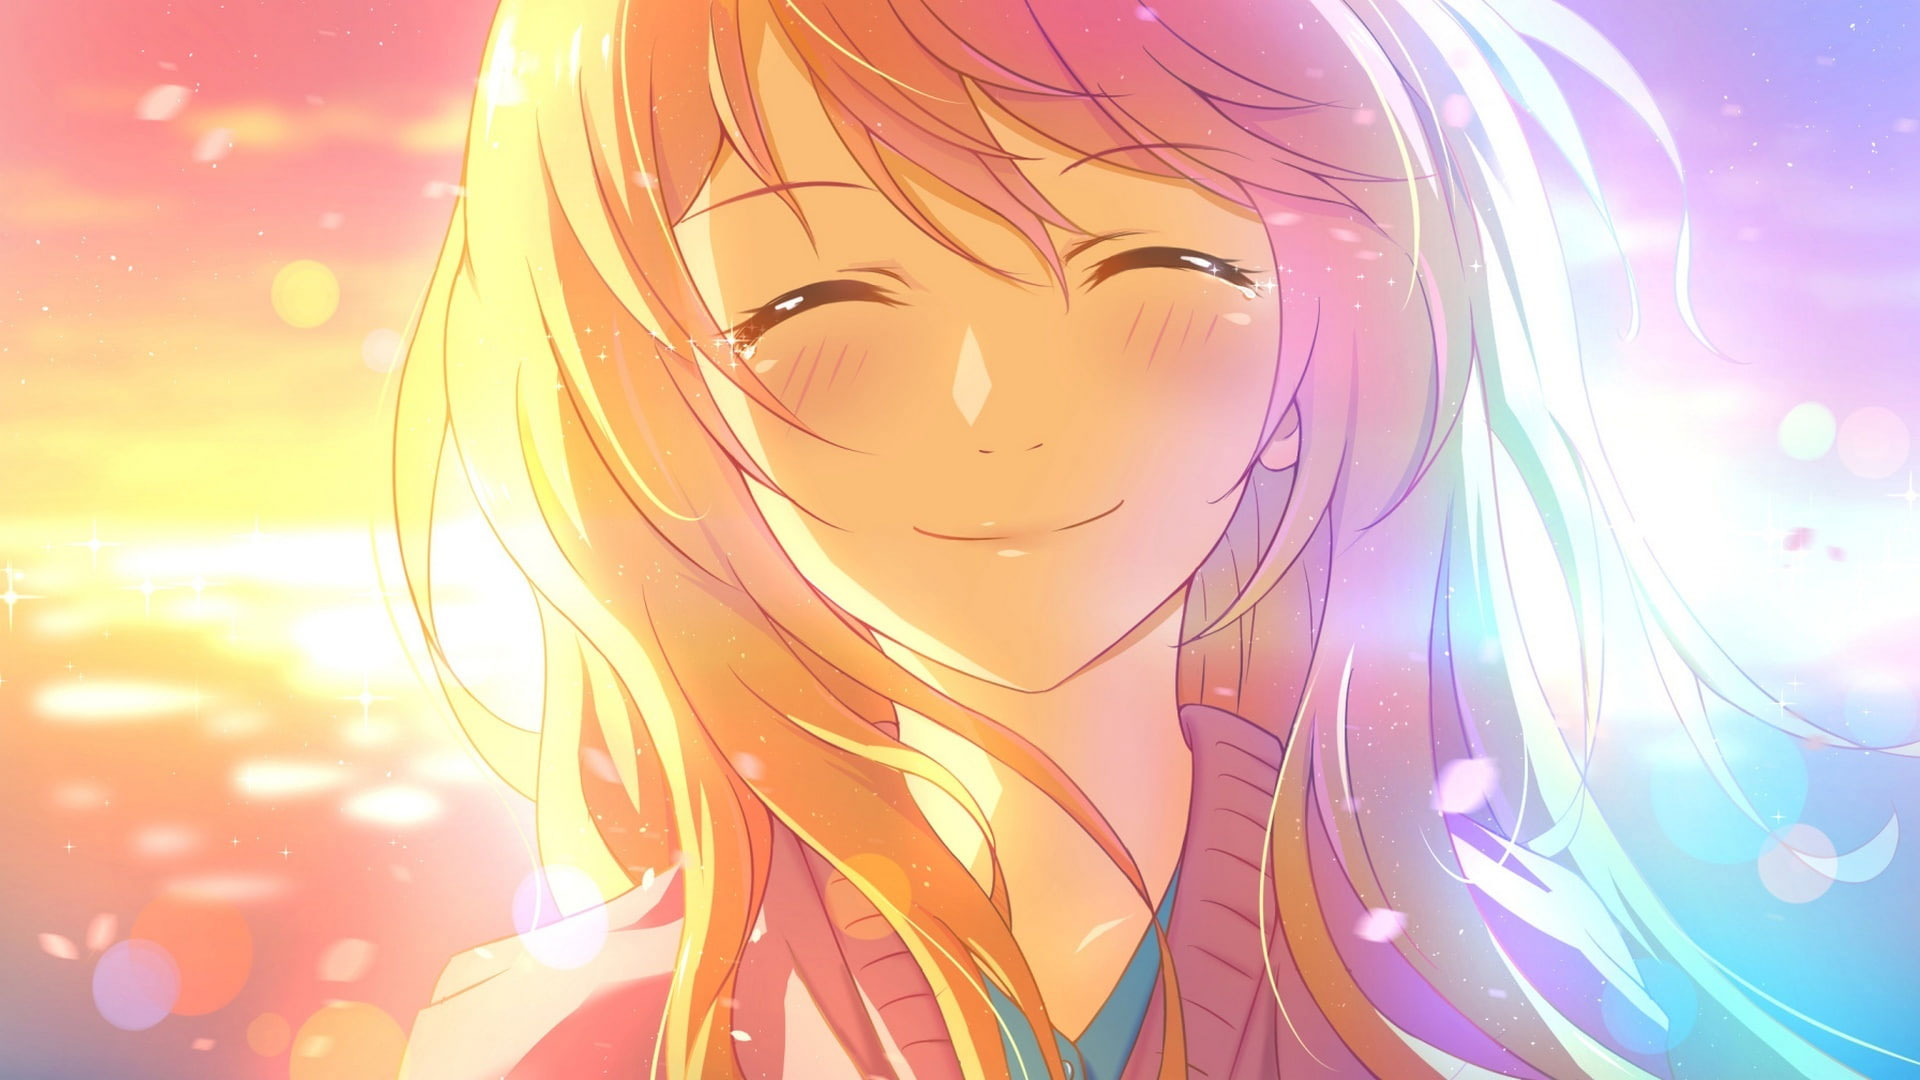 Girl wallpaper, smile, angel, cute, anime girl